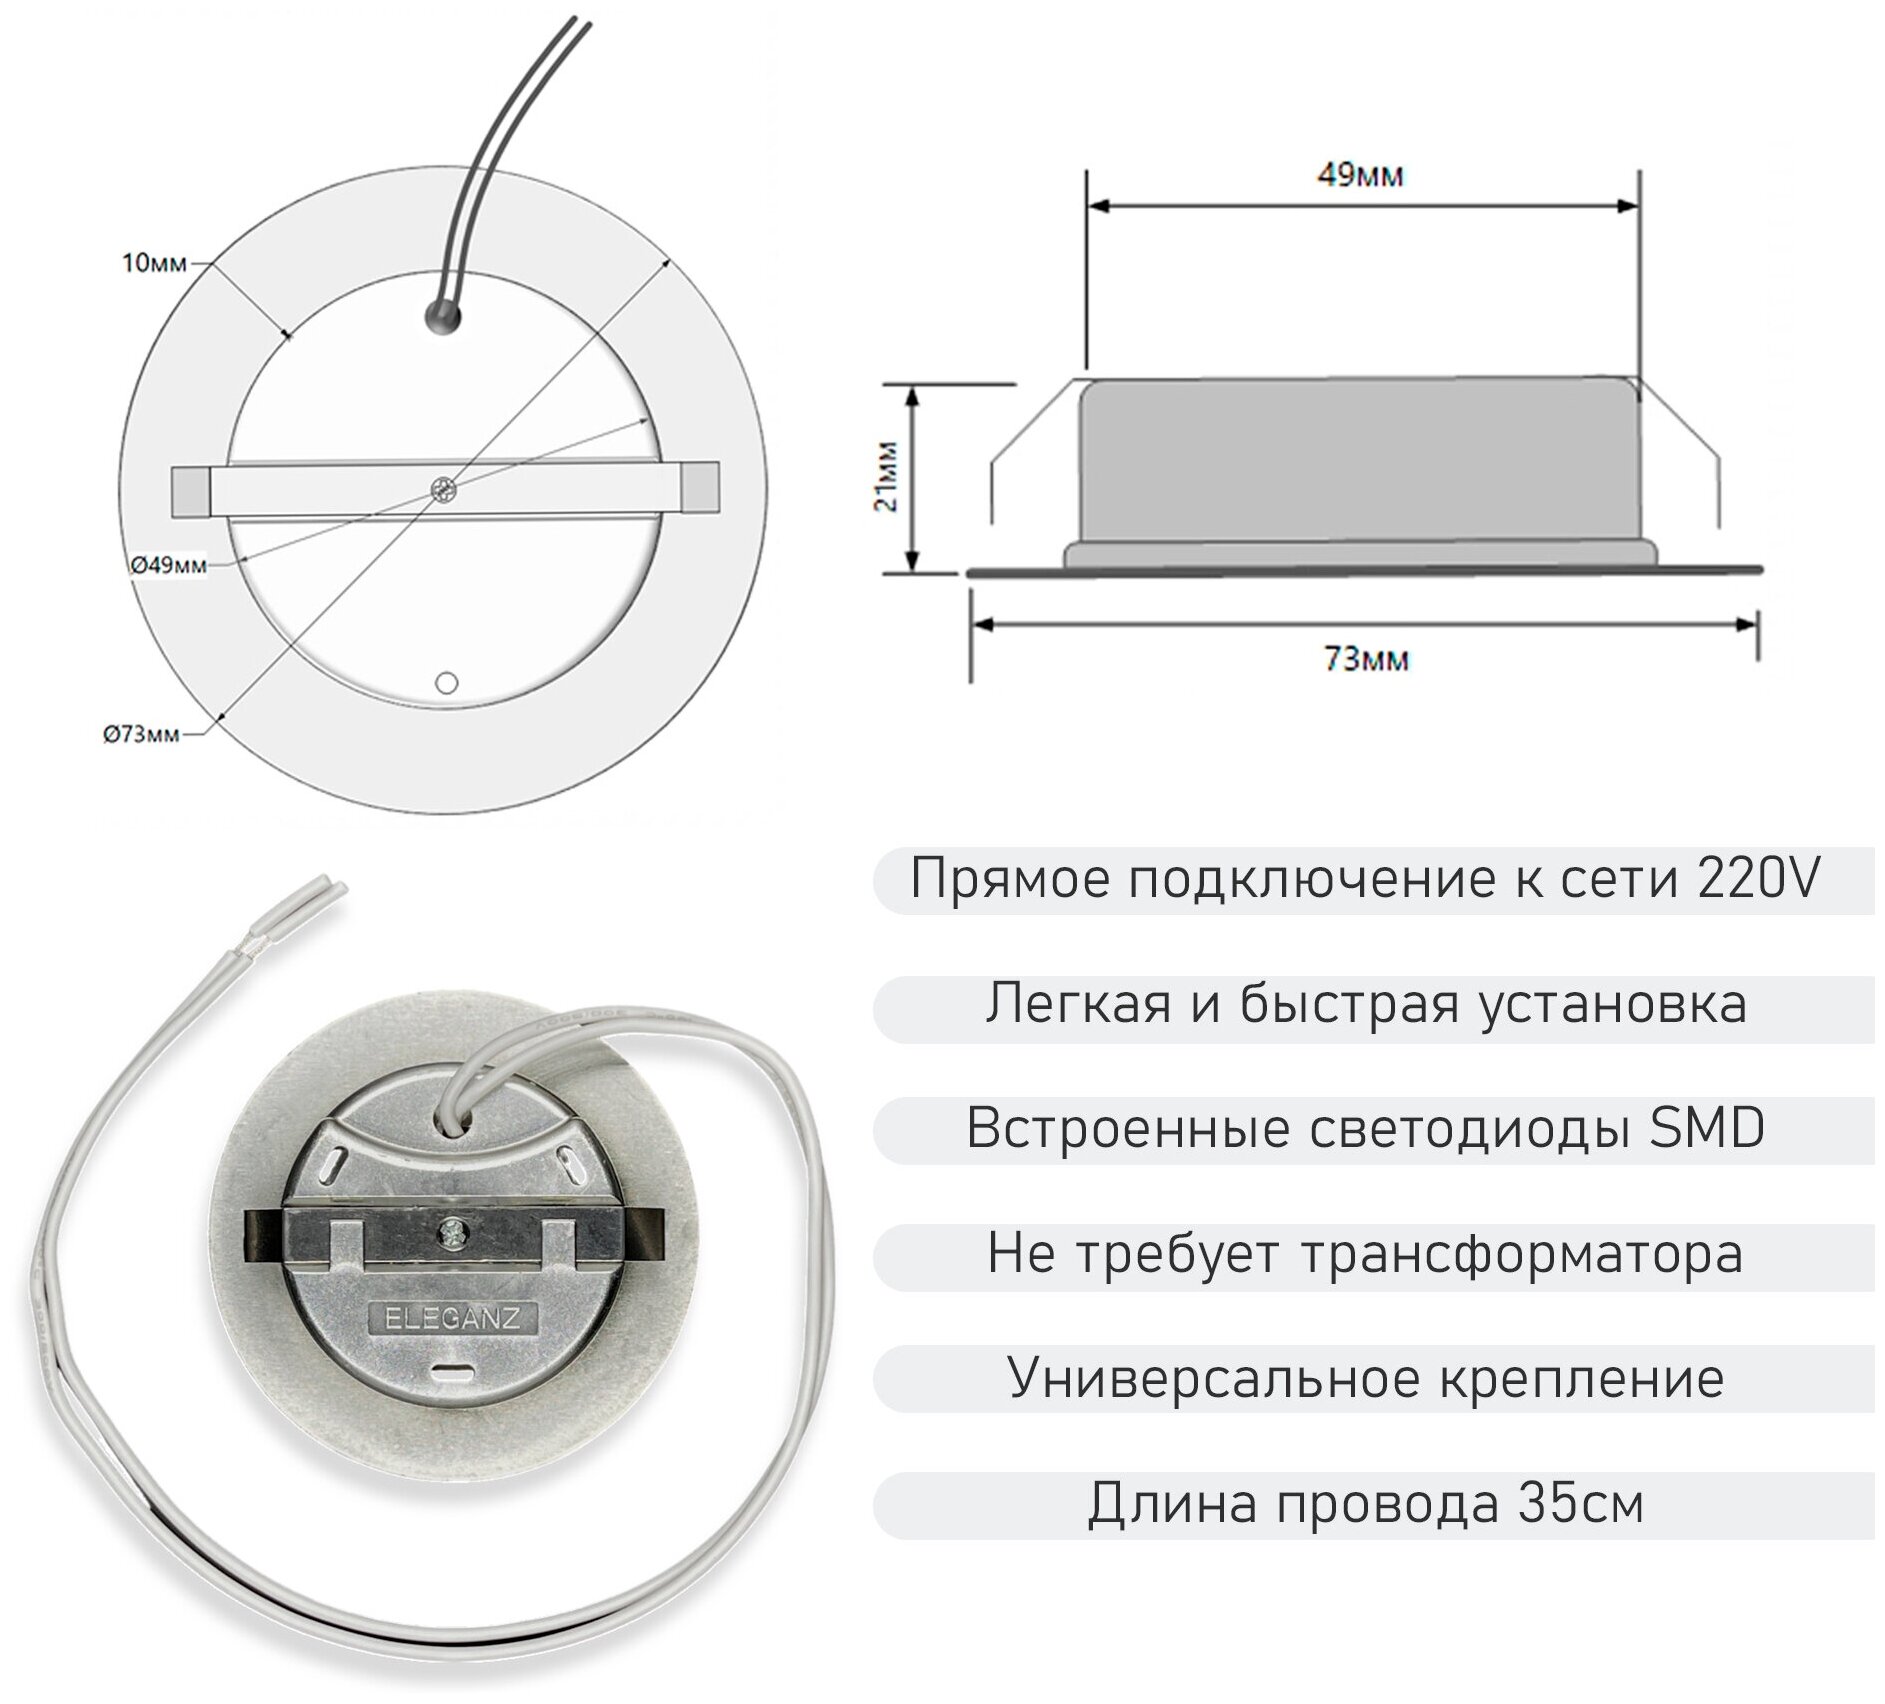 Мебельный светодиодный встраиваемый светильник Eleganz Silver металлический 4W 220V 4500K IP20 Комплект из 2 штук